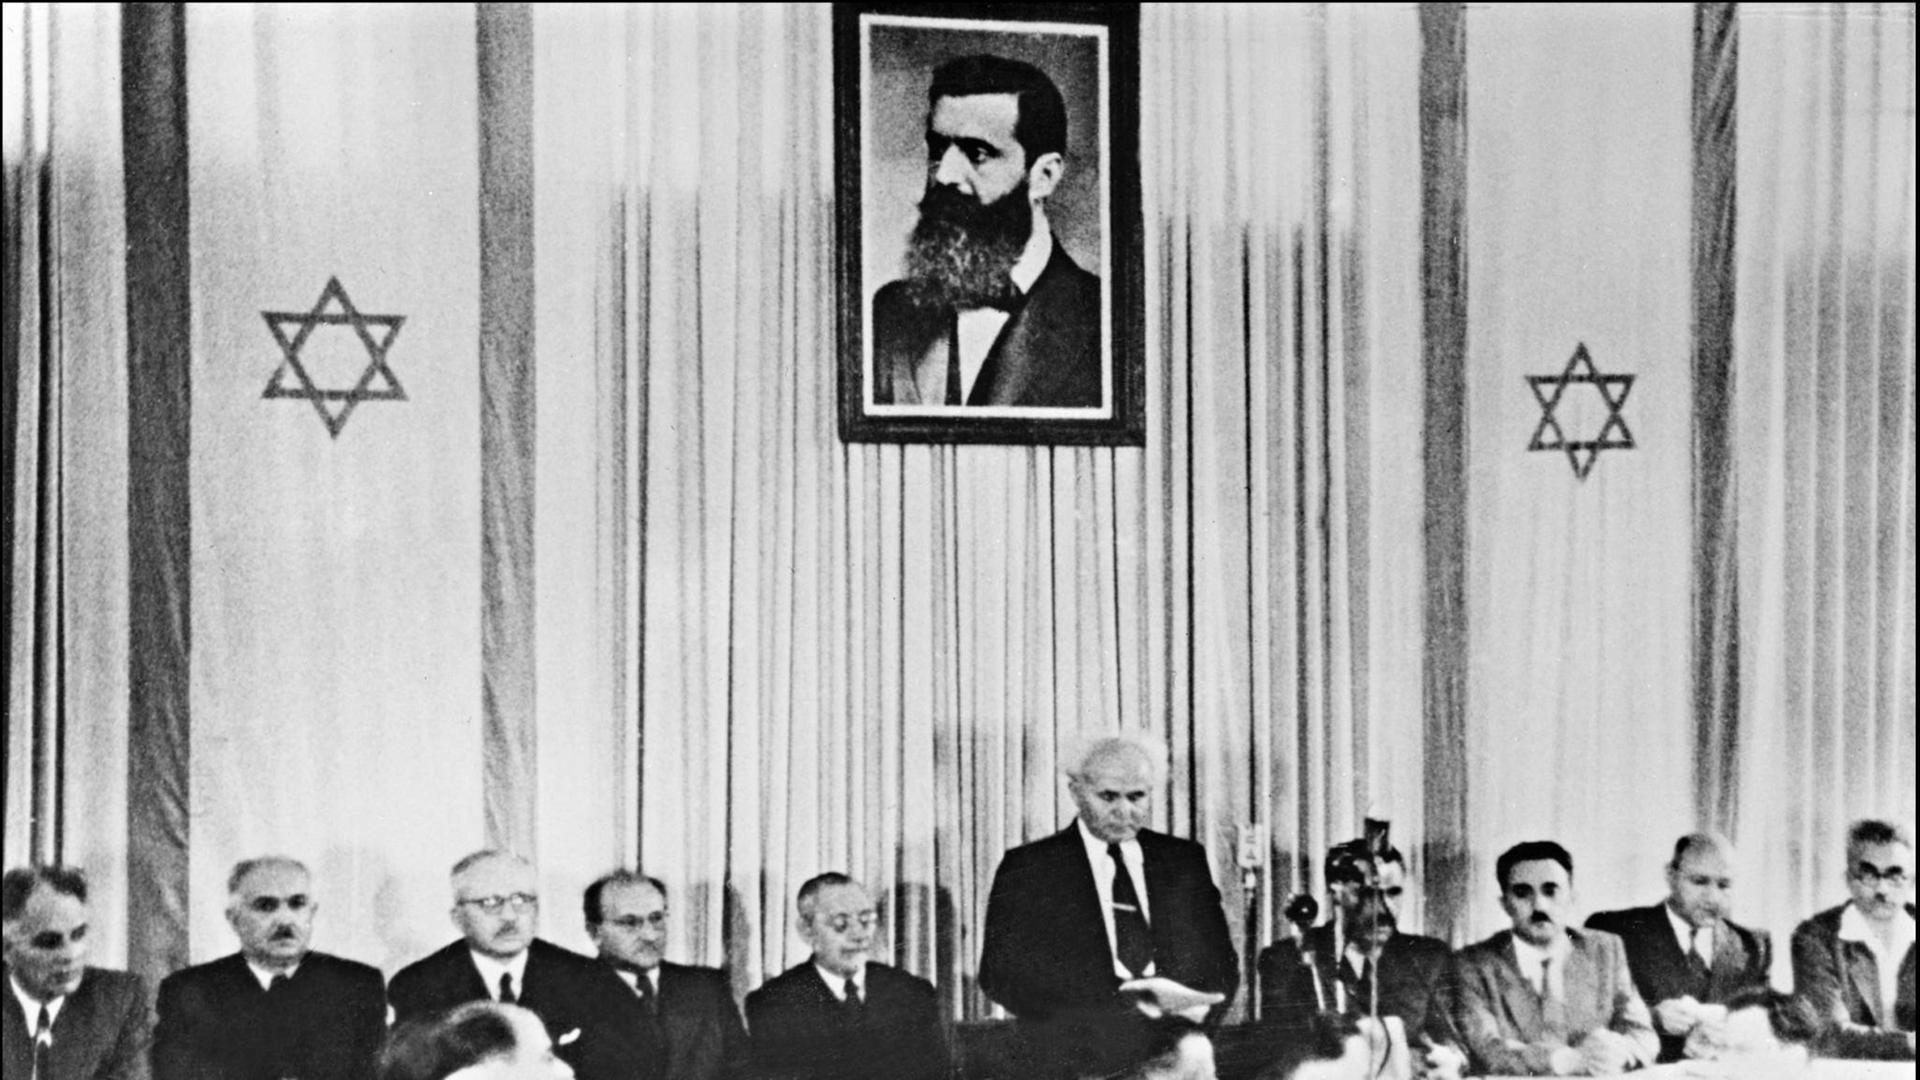 Der erste israelische Premierminister David Ben-Gurion (stehend) verkündet am 14. Mai 1948 in Tel Aviv vor Mitgliedern der jüdischen Ratsversammlung die Gründung des Staates Israel; oben ein Porträt von Theodor Herzl, Begründer des politischen Zionismus.